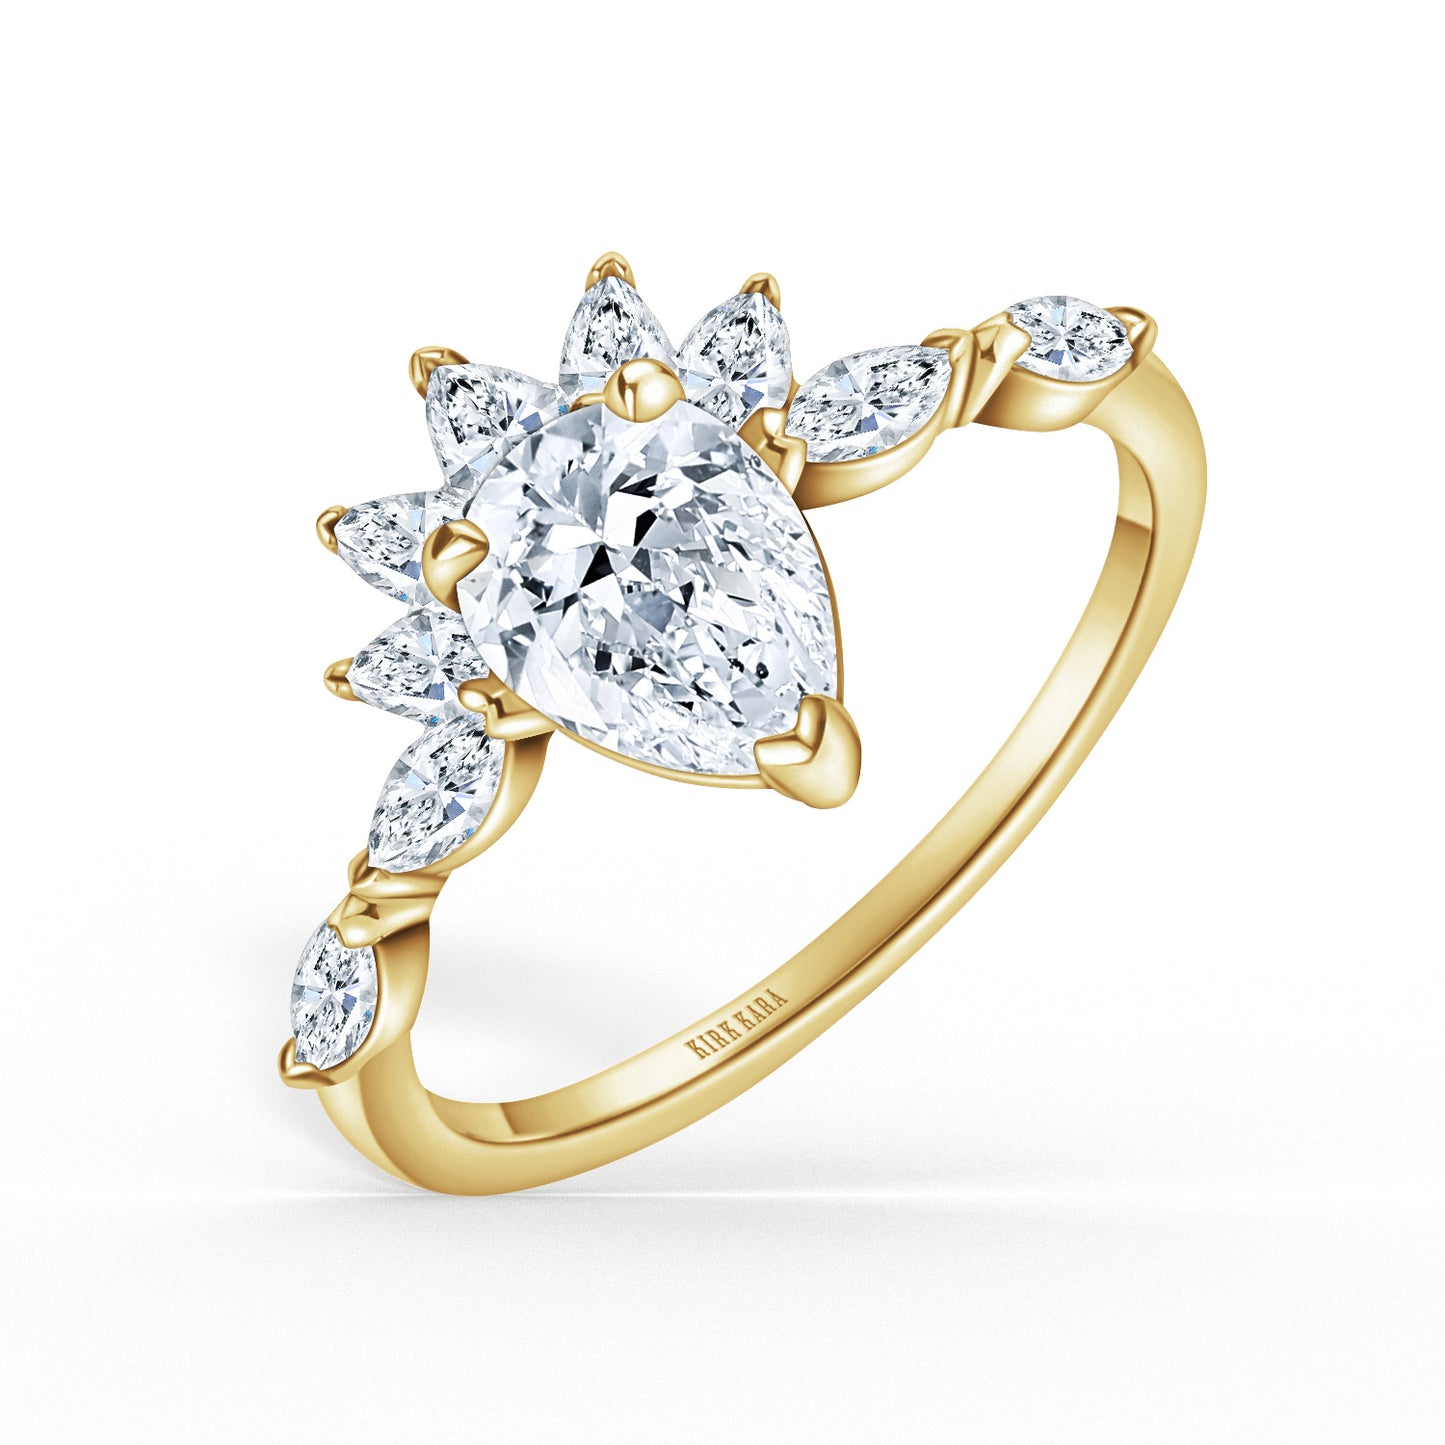 Glamorous Boho Floating Diamond Engagement Ring